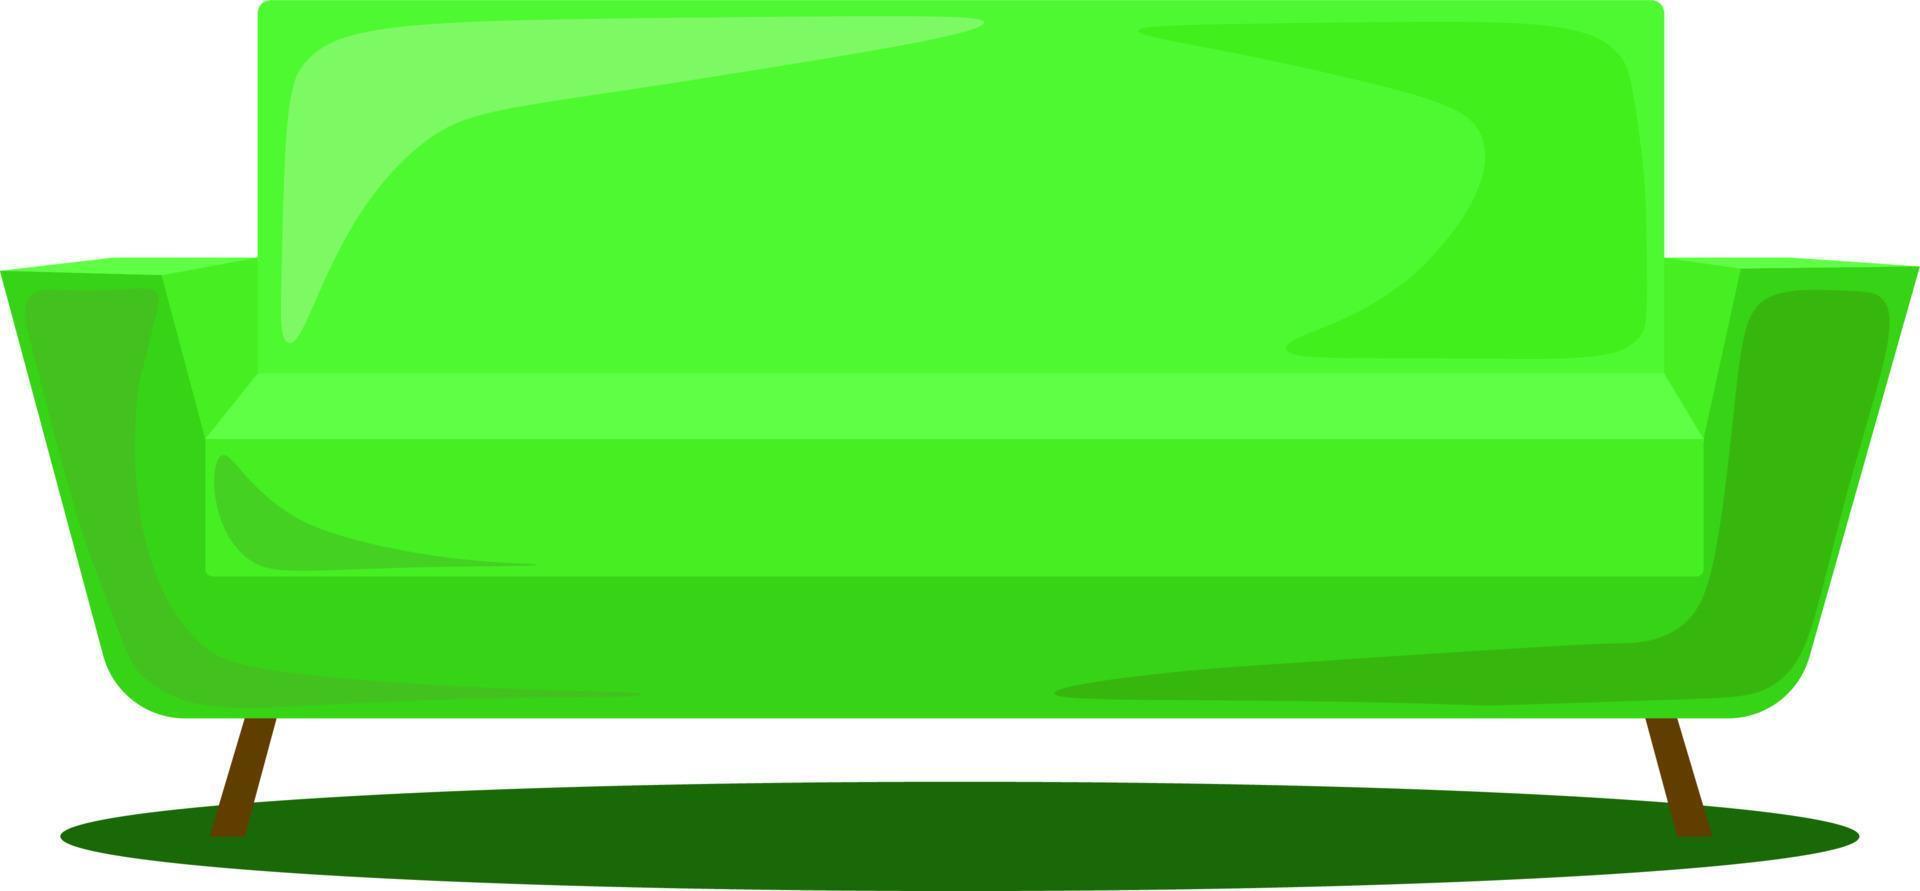 sofá verde, ilustração, vetor em fundo branco.